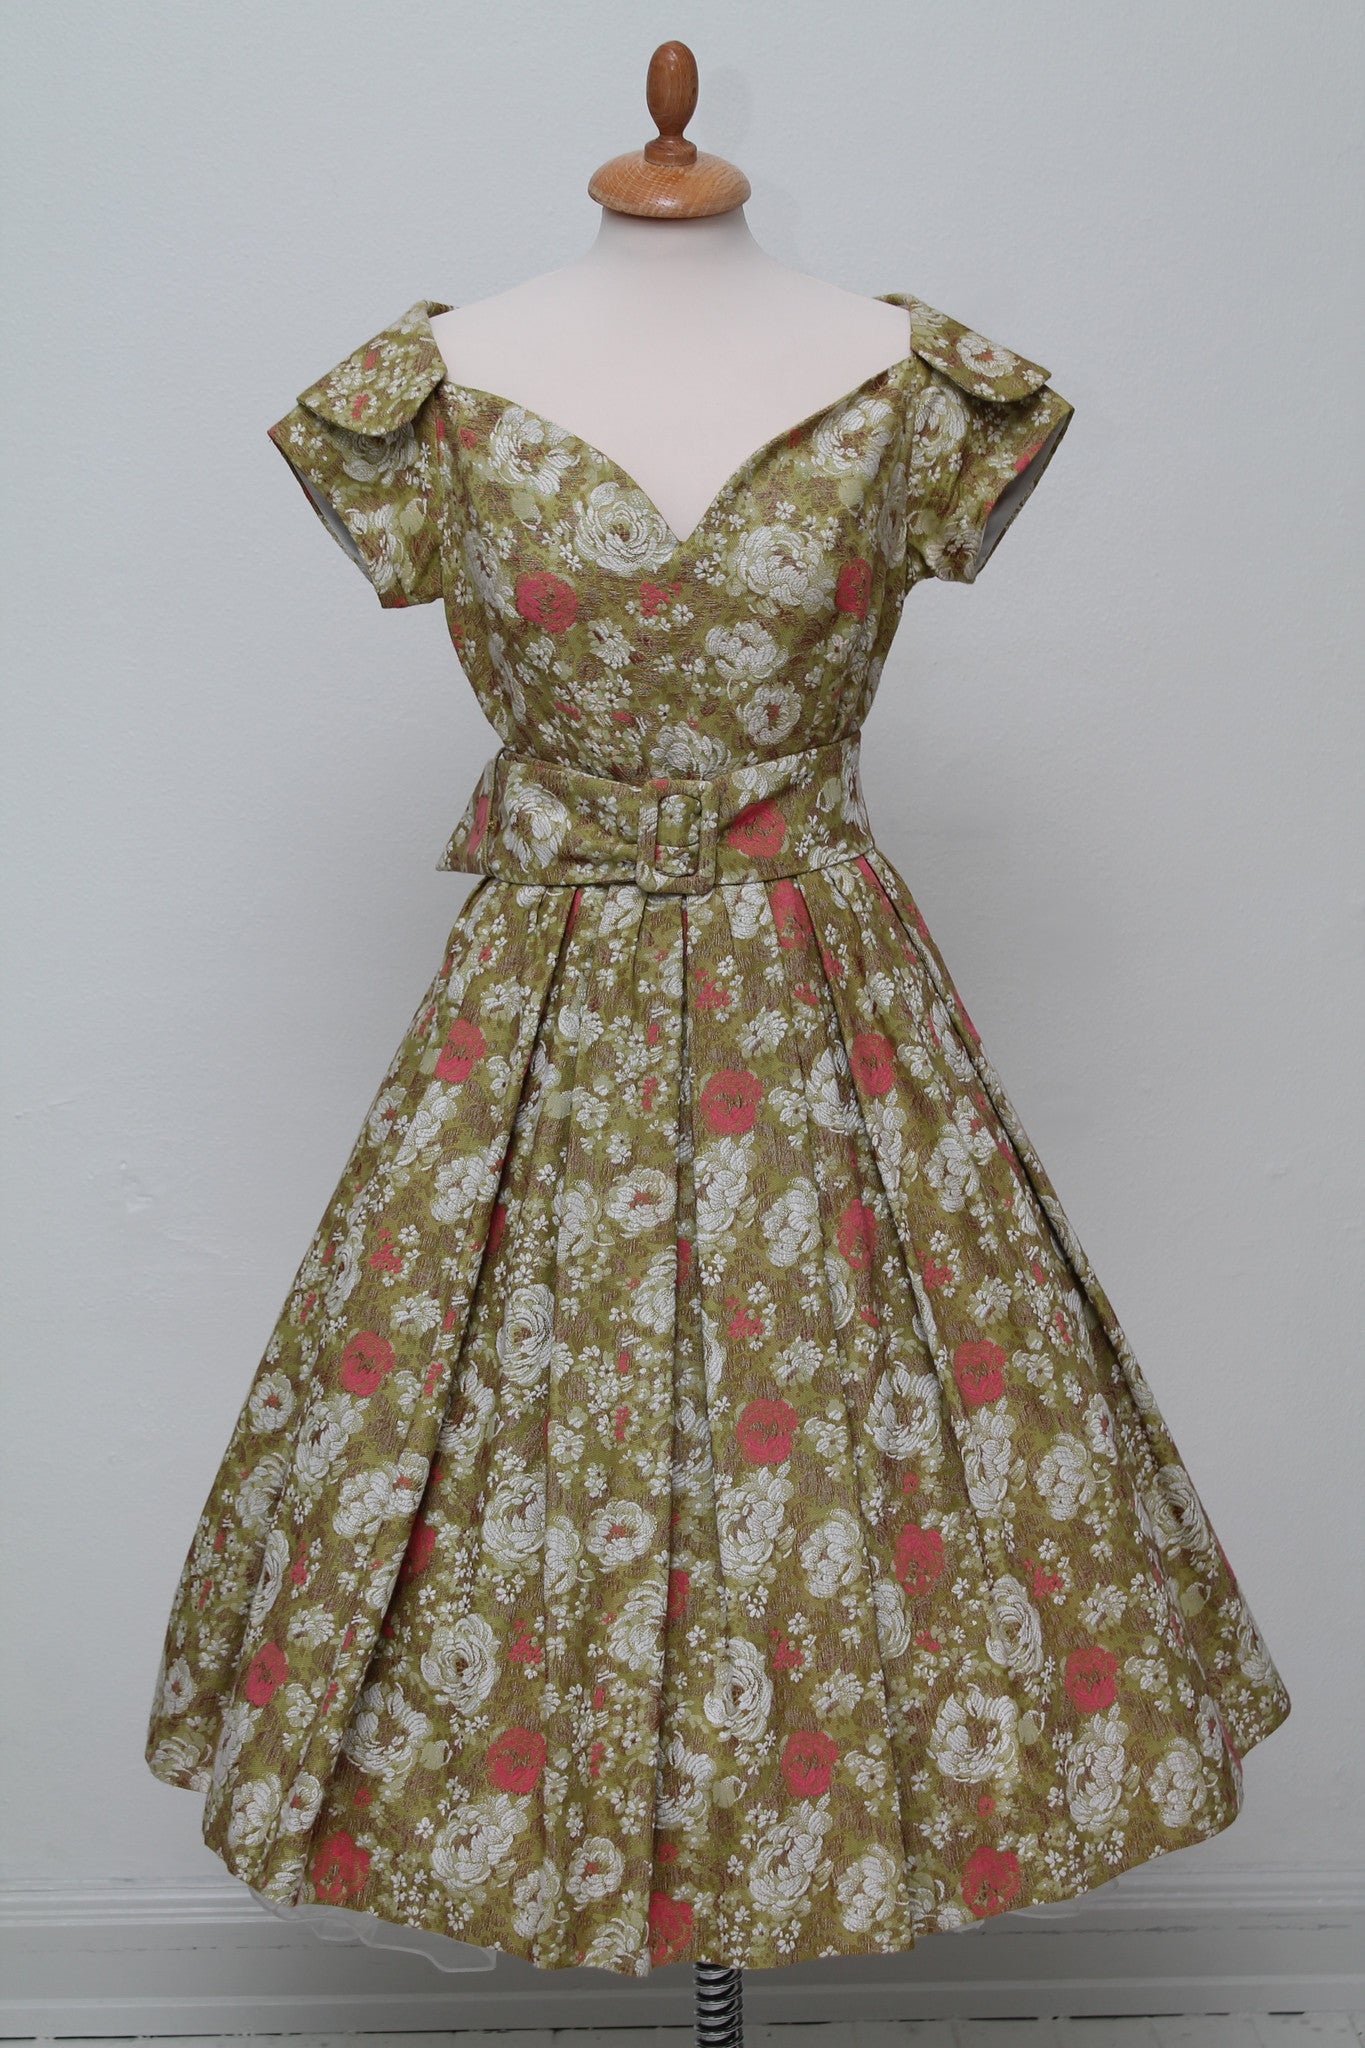 Vintage tøj - Selskabskjole i bomuldsbrokade 1950. S-M - Vintage kjoler fra 1950'erne - Vintage Divine - 1